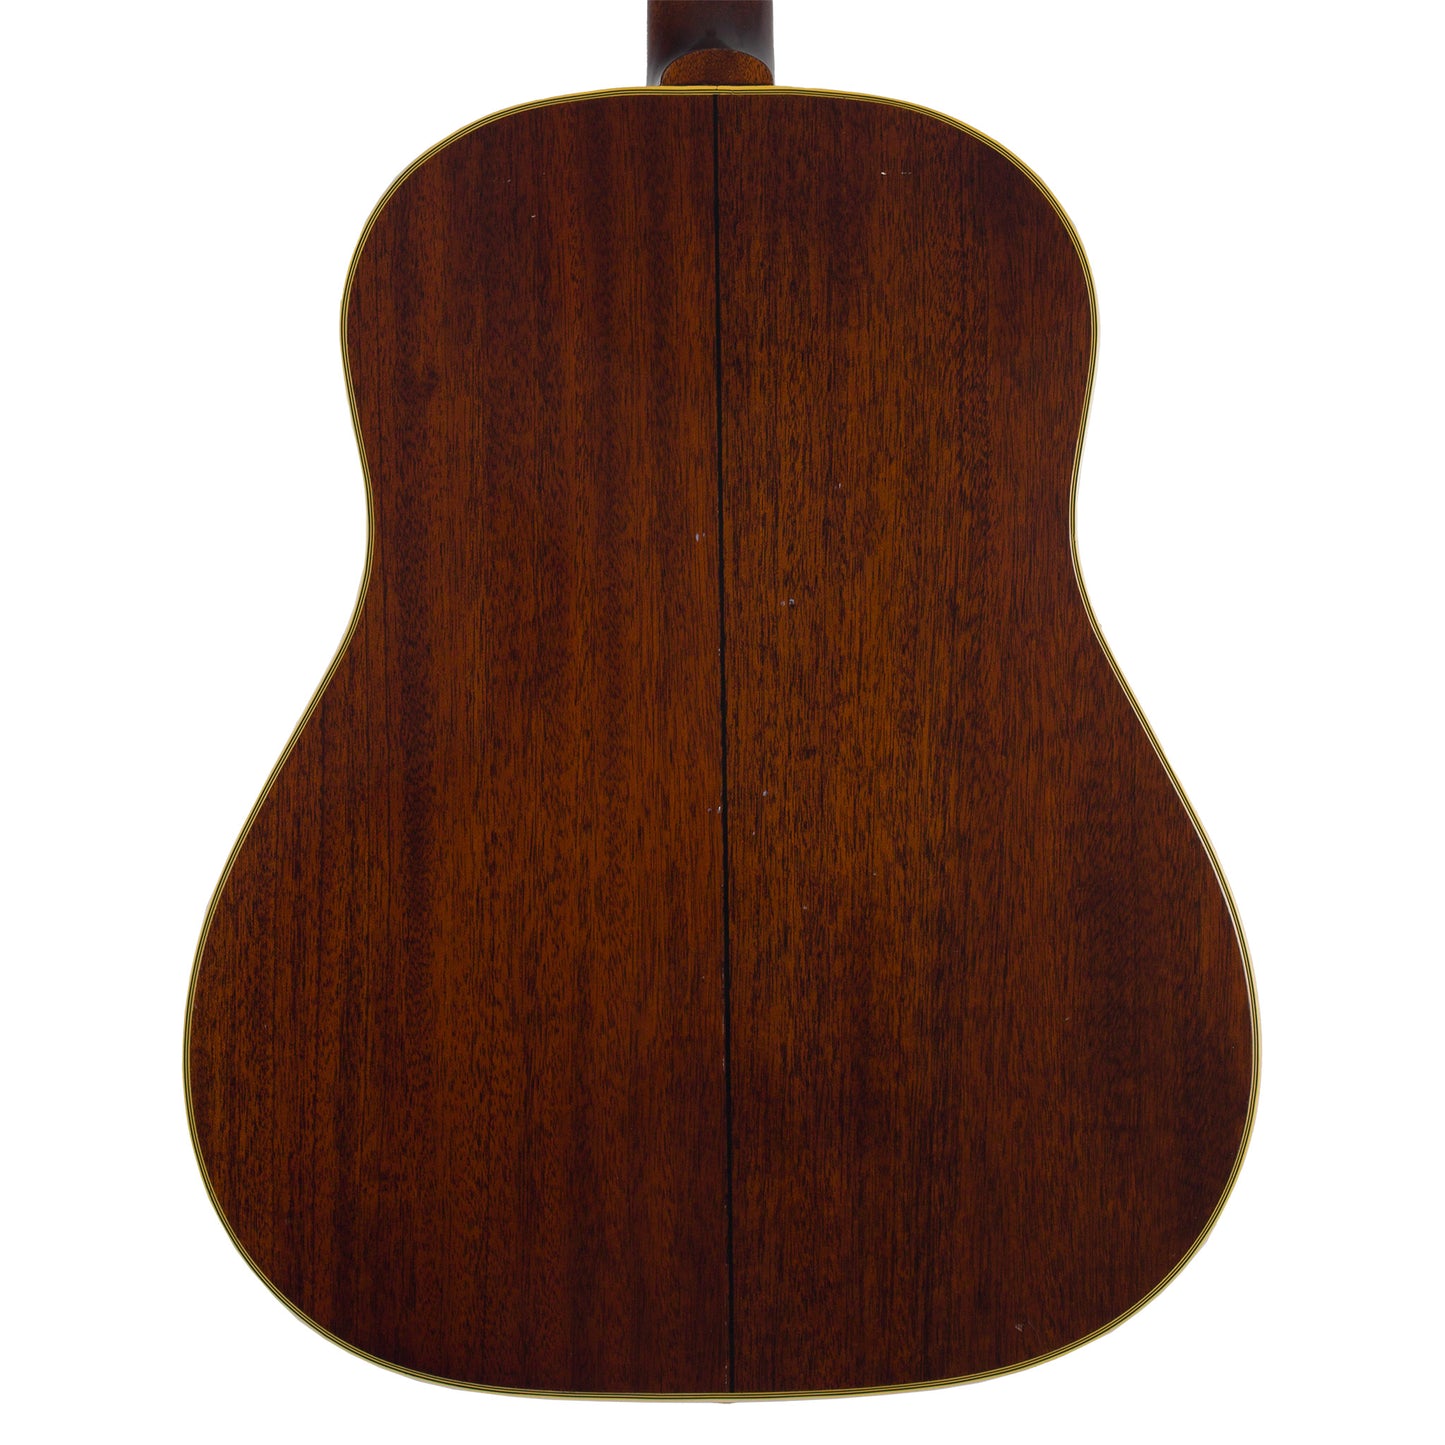 1954 Gibson Southern Jumbo